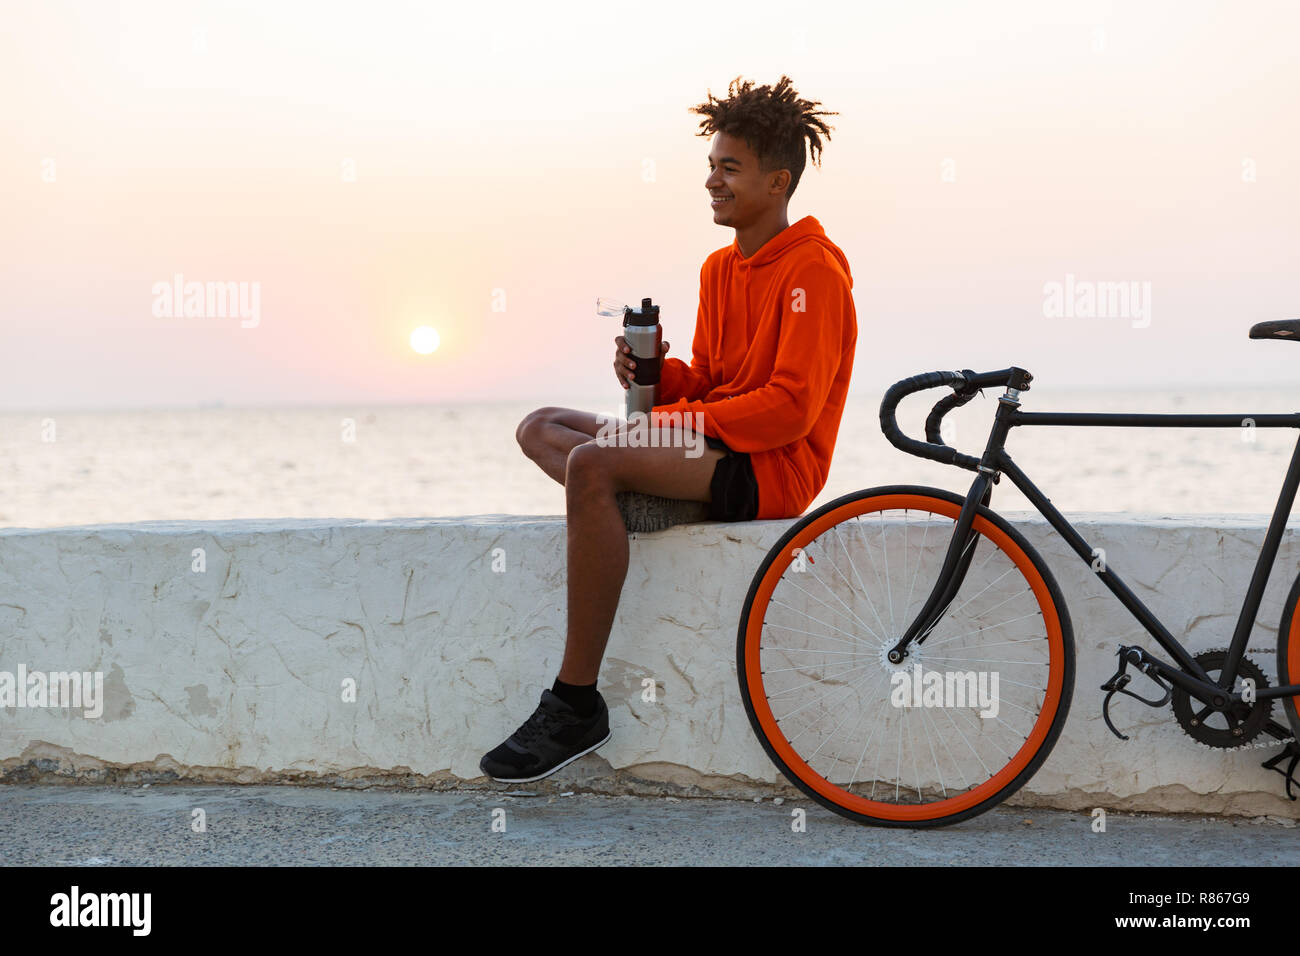 Bild von einem gutaussehenden jungen afrikanischen Mann mit Fahrrad im Freien am Strand Trinkwasser. Stockfoto